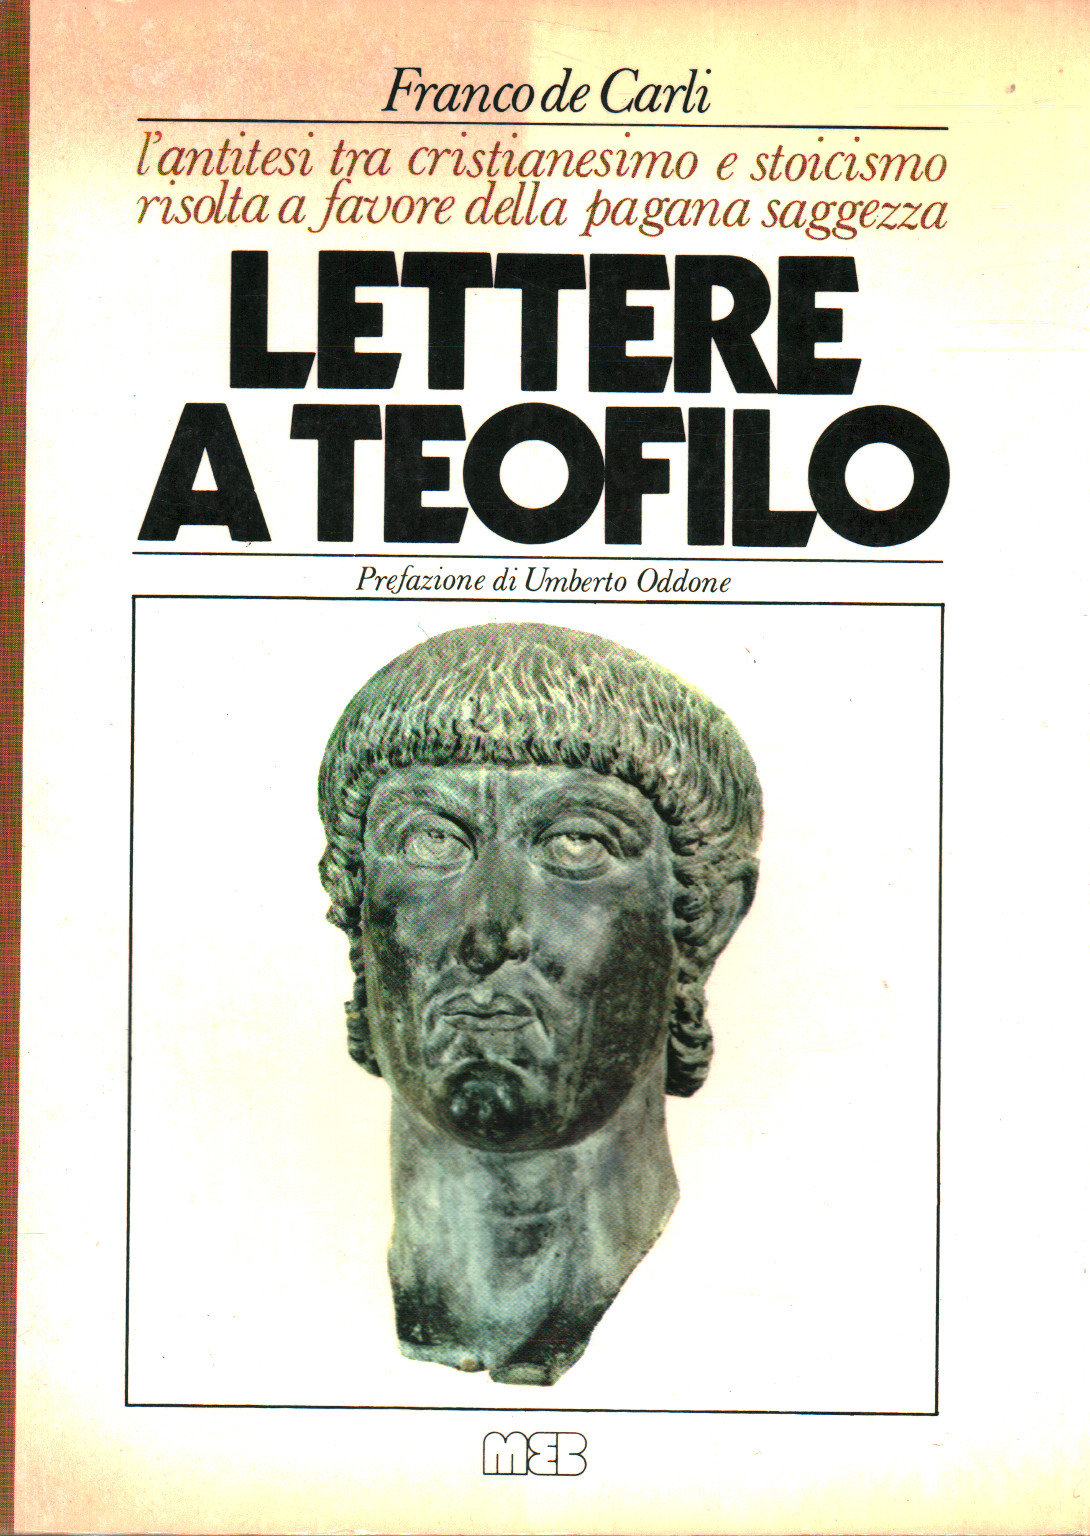 Lettere a Teofilo, s.a.